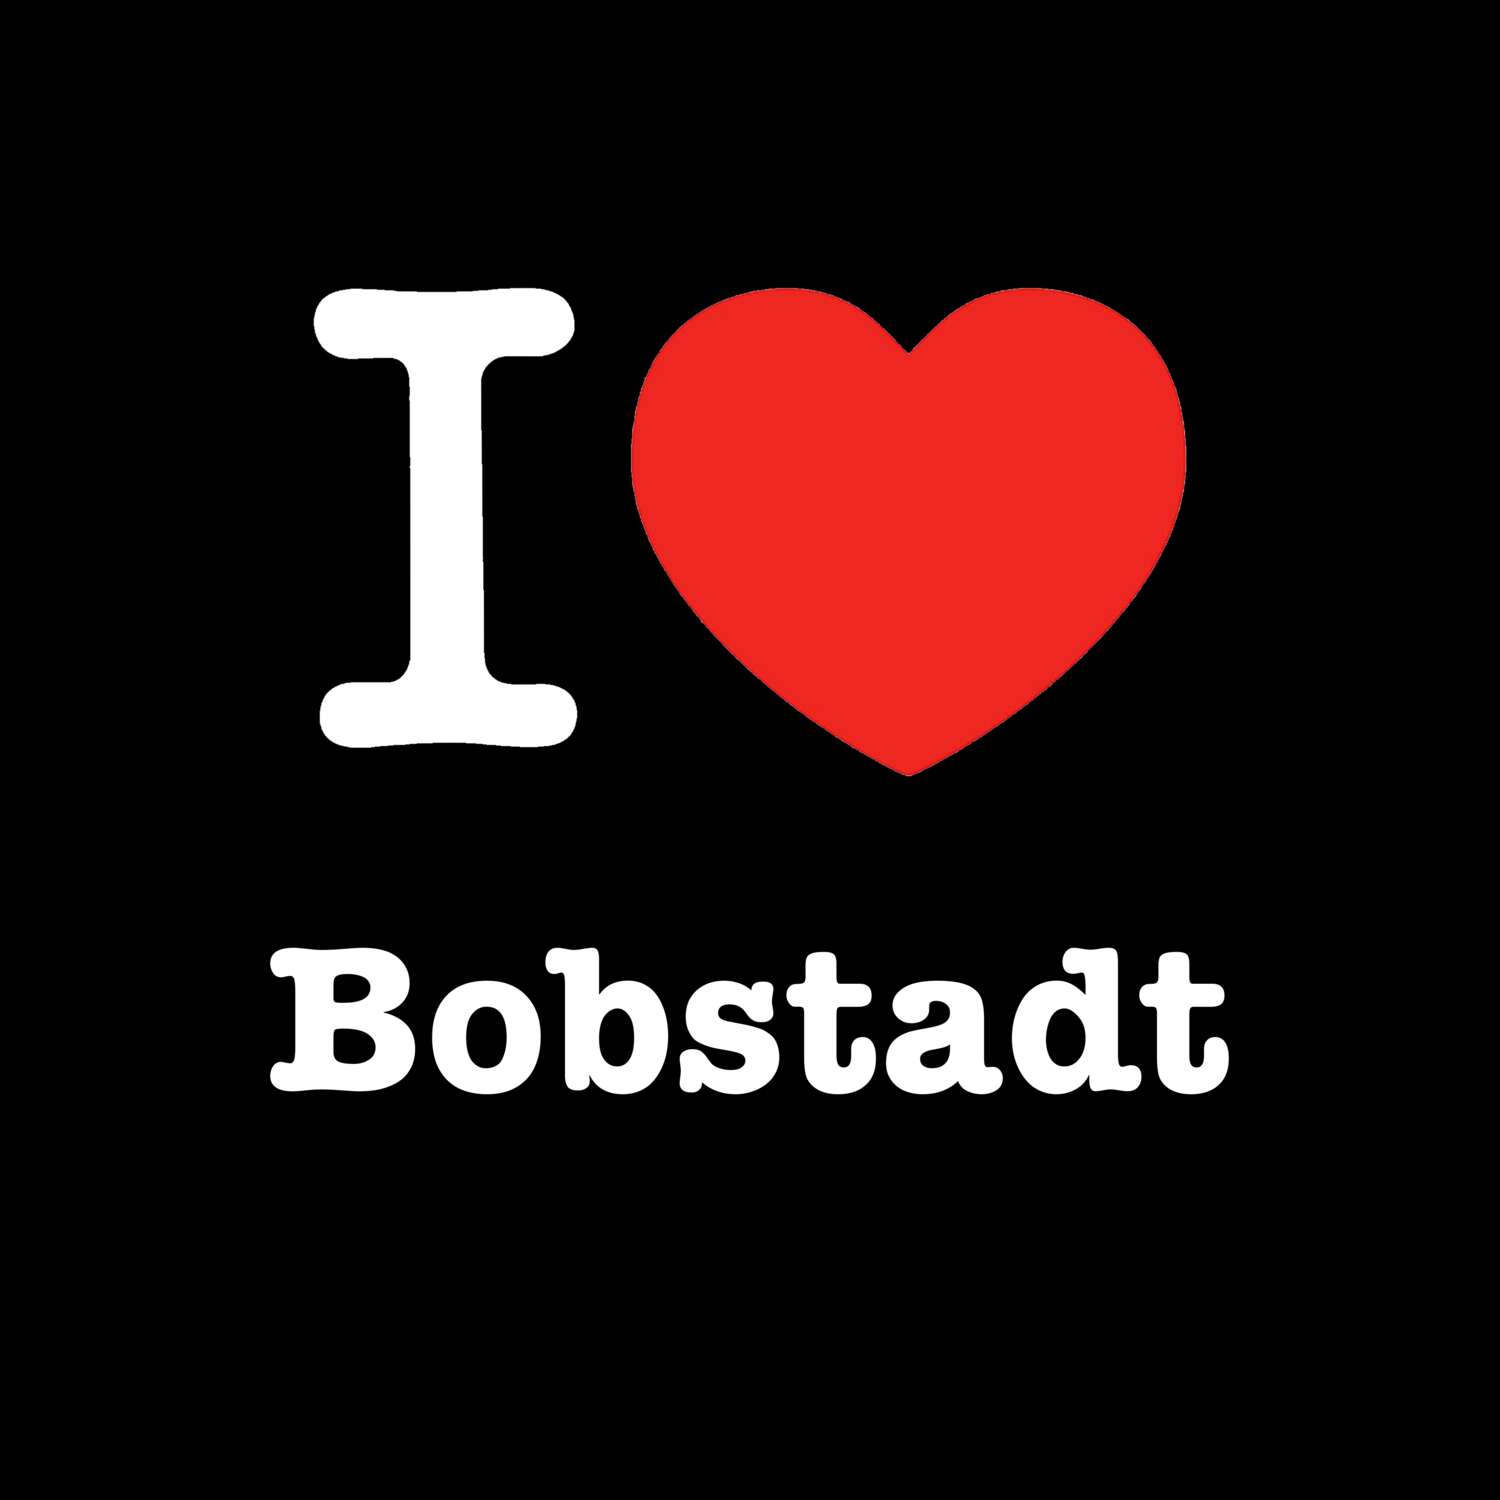 Bobstadt T-Shirt »I love«